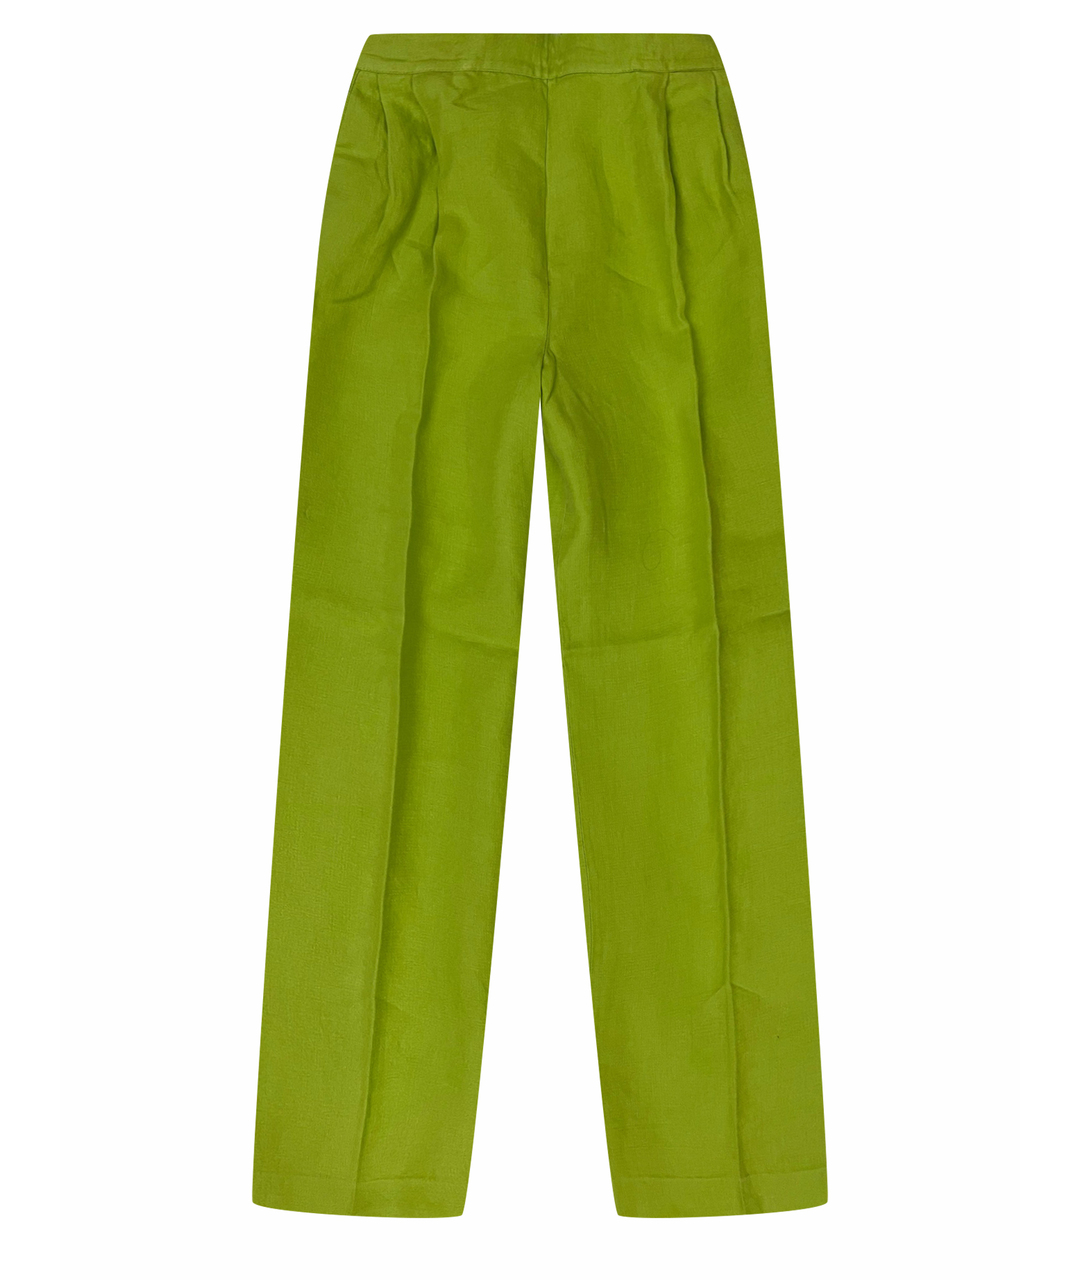 GIANFRANCO FERRE VINTAGE Салатовые льняные брюки широкие, фото 1